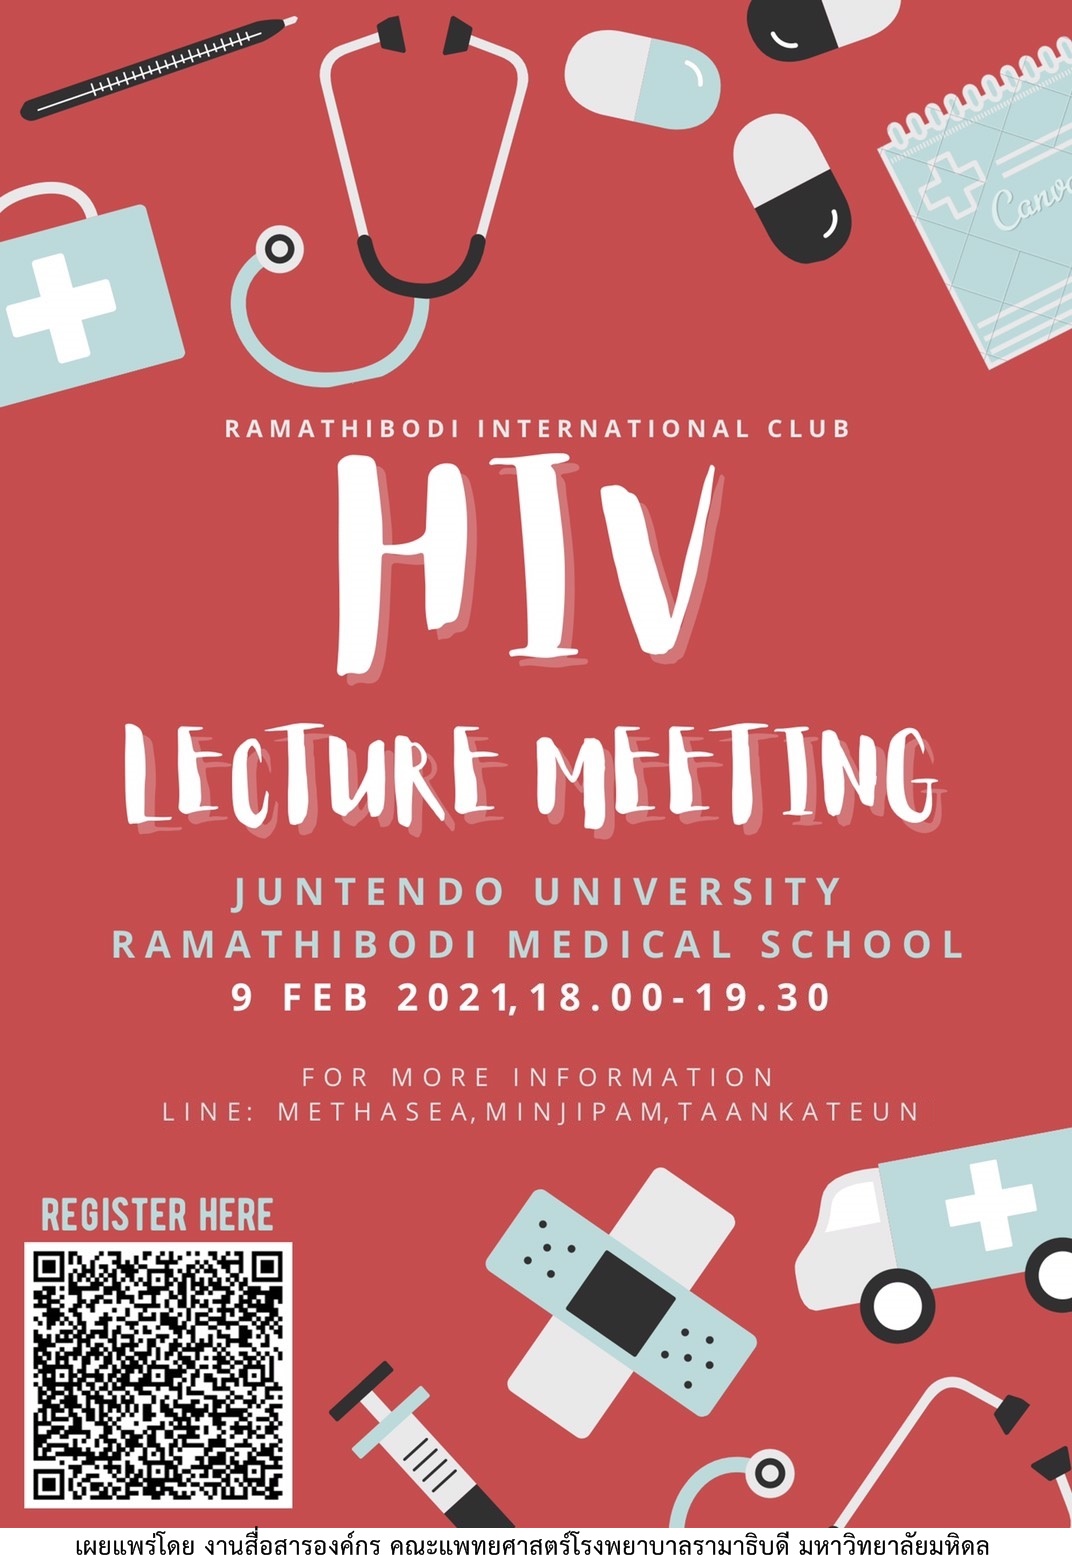 RAMATHIBODI INTERNALIONAL CLUB HIV LECTURE MEETING